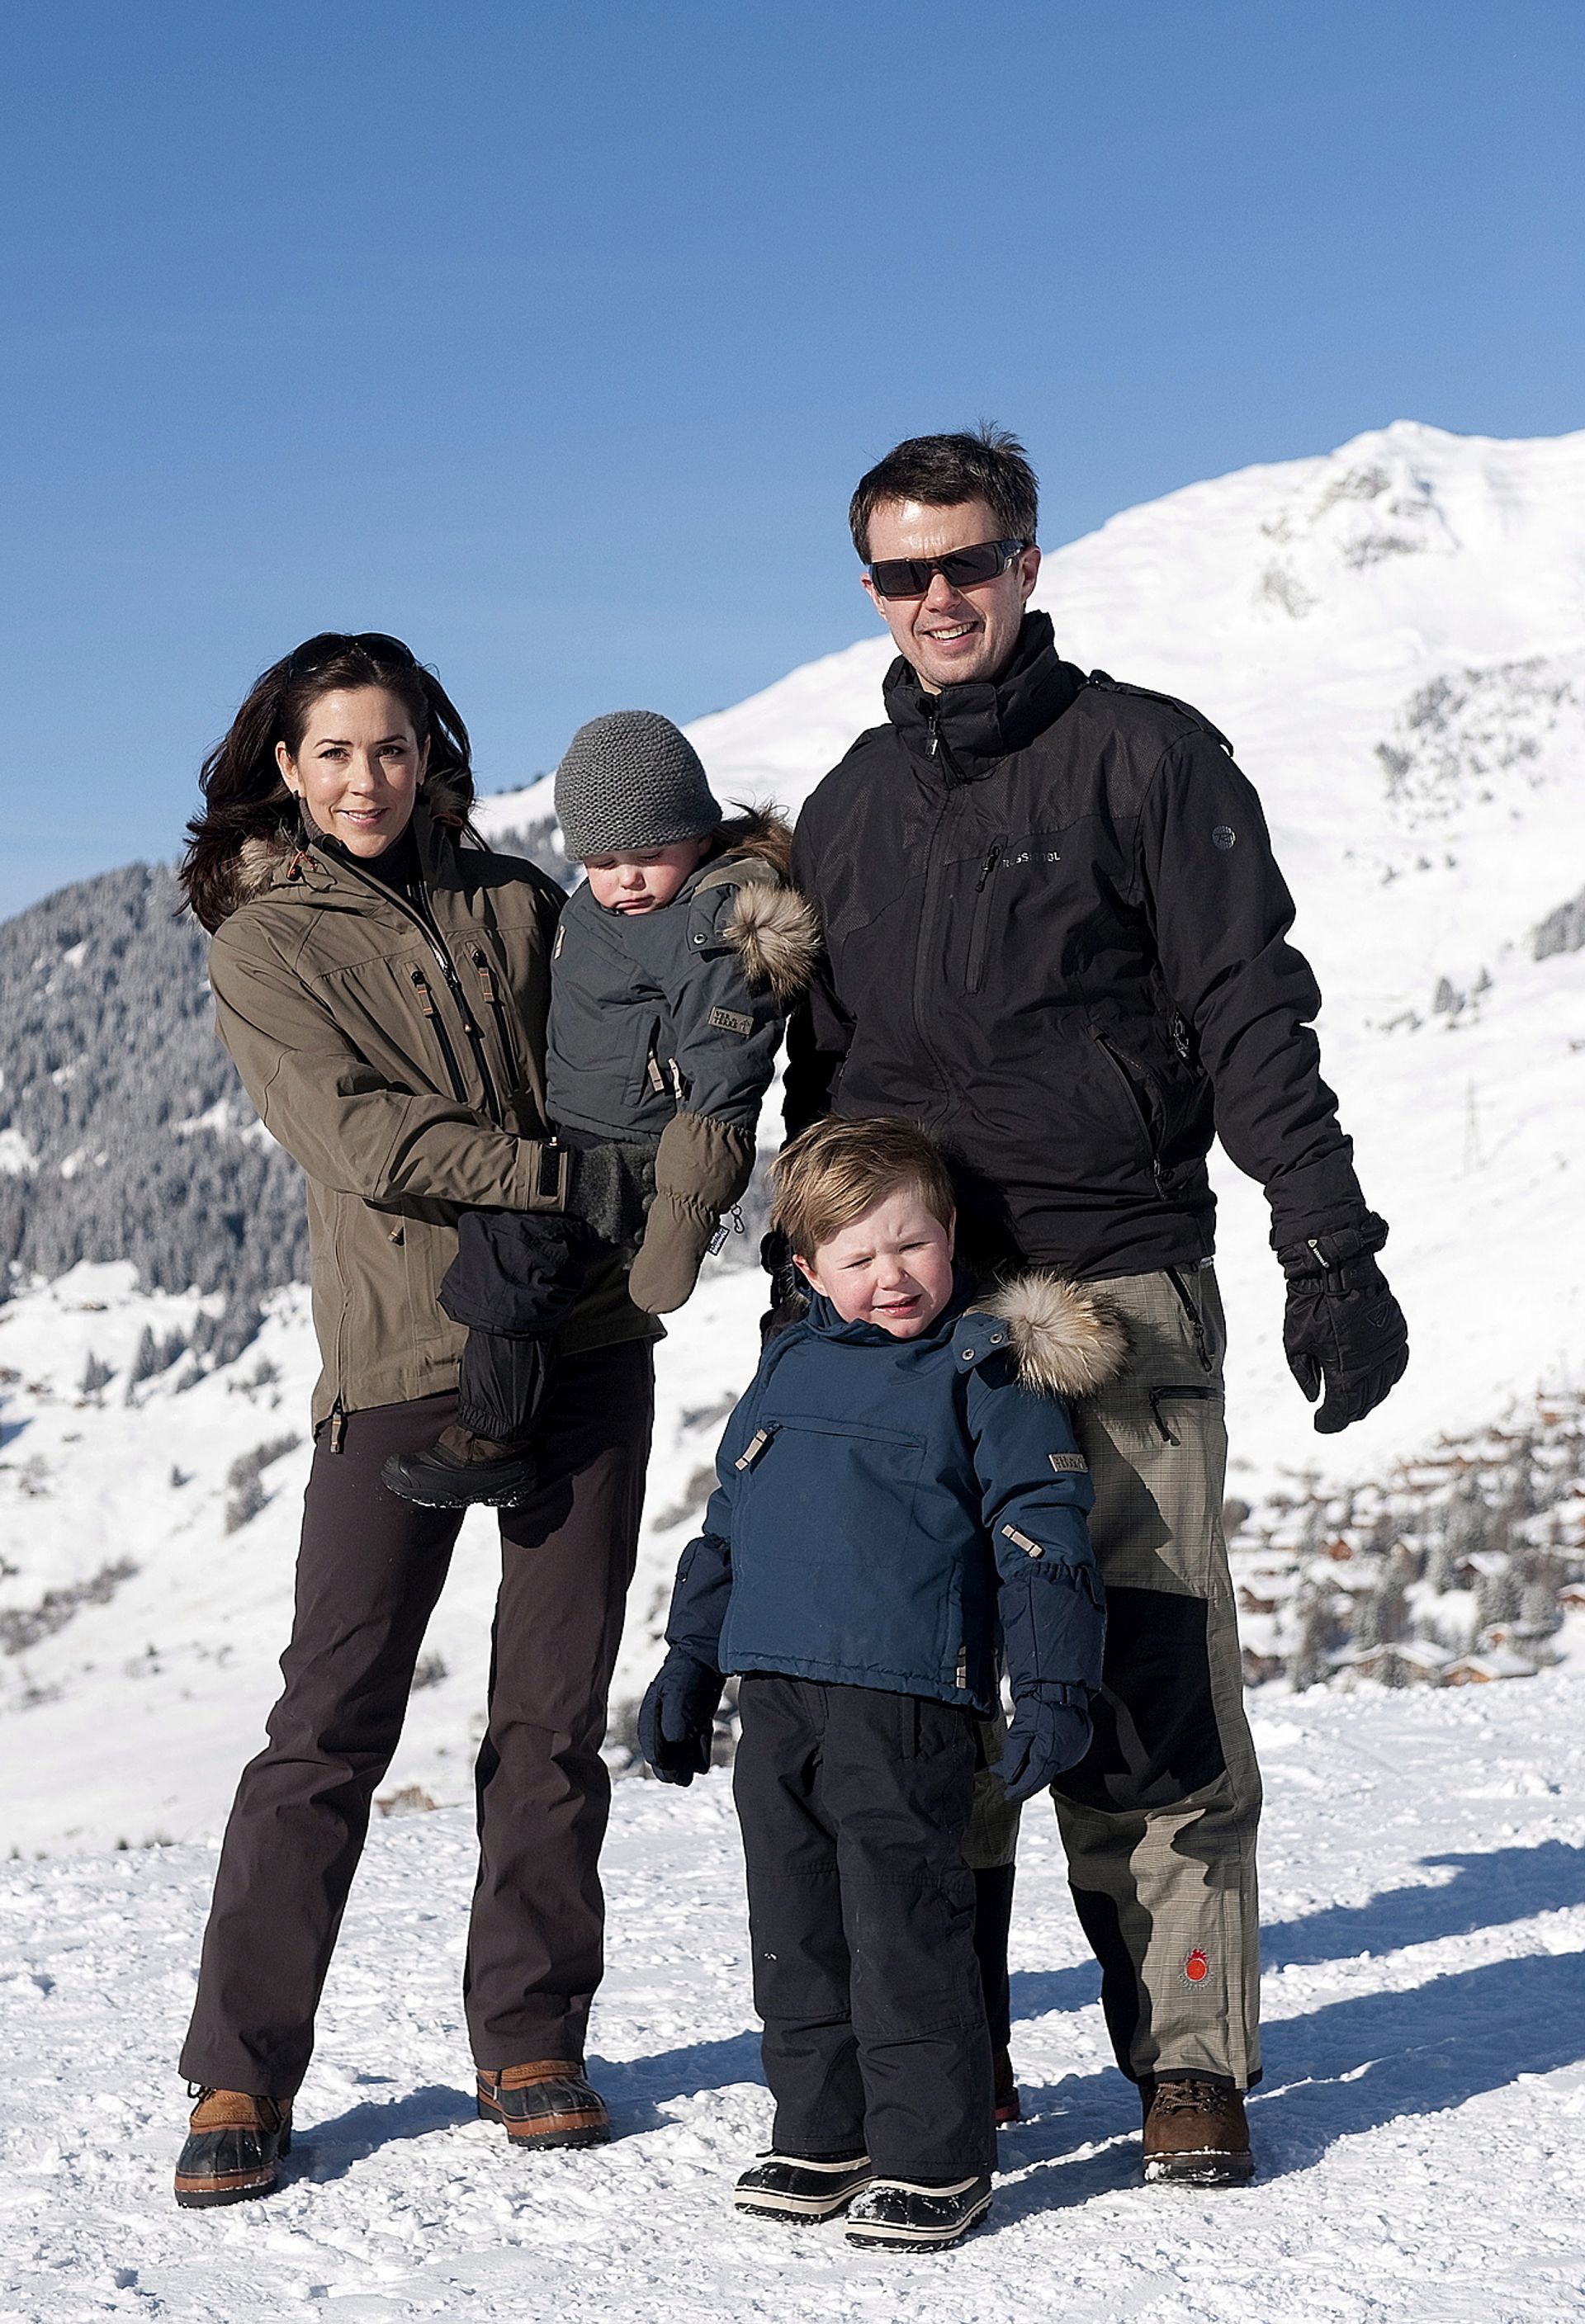 Februari 2010, Prins Christian met zijn ouders en zusje op ski-vakantie in Zwitserland.